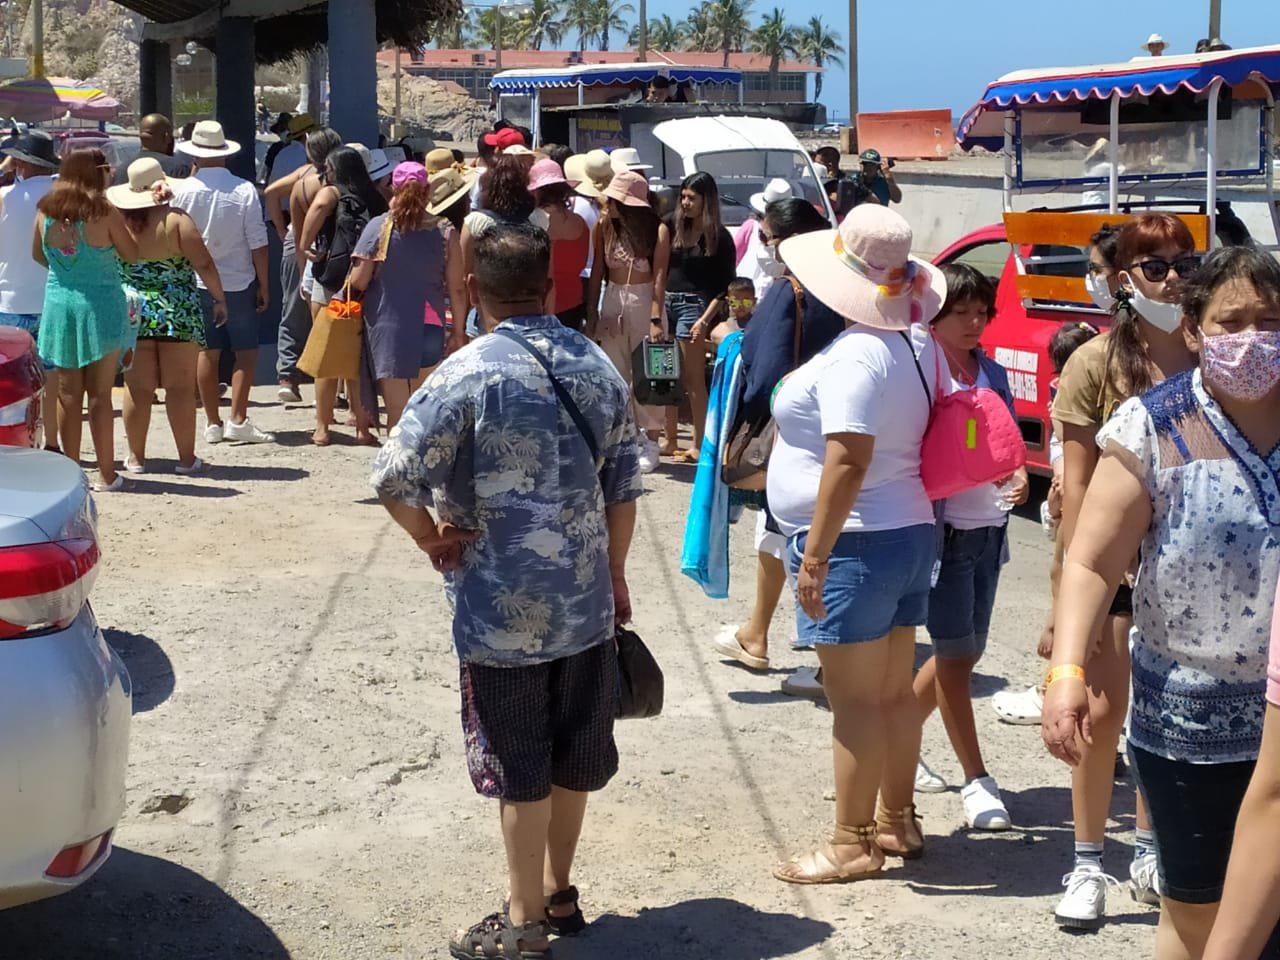 $!El turismo es una actividad productiva, no una cosa frívola: Santamaría